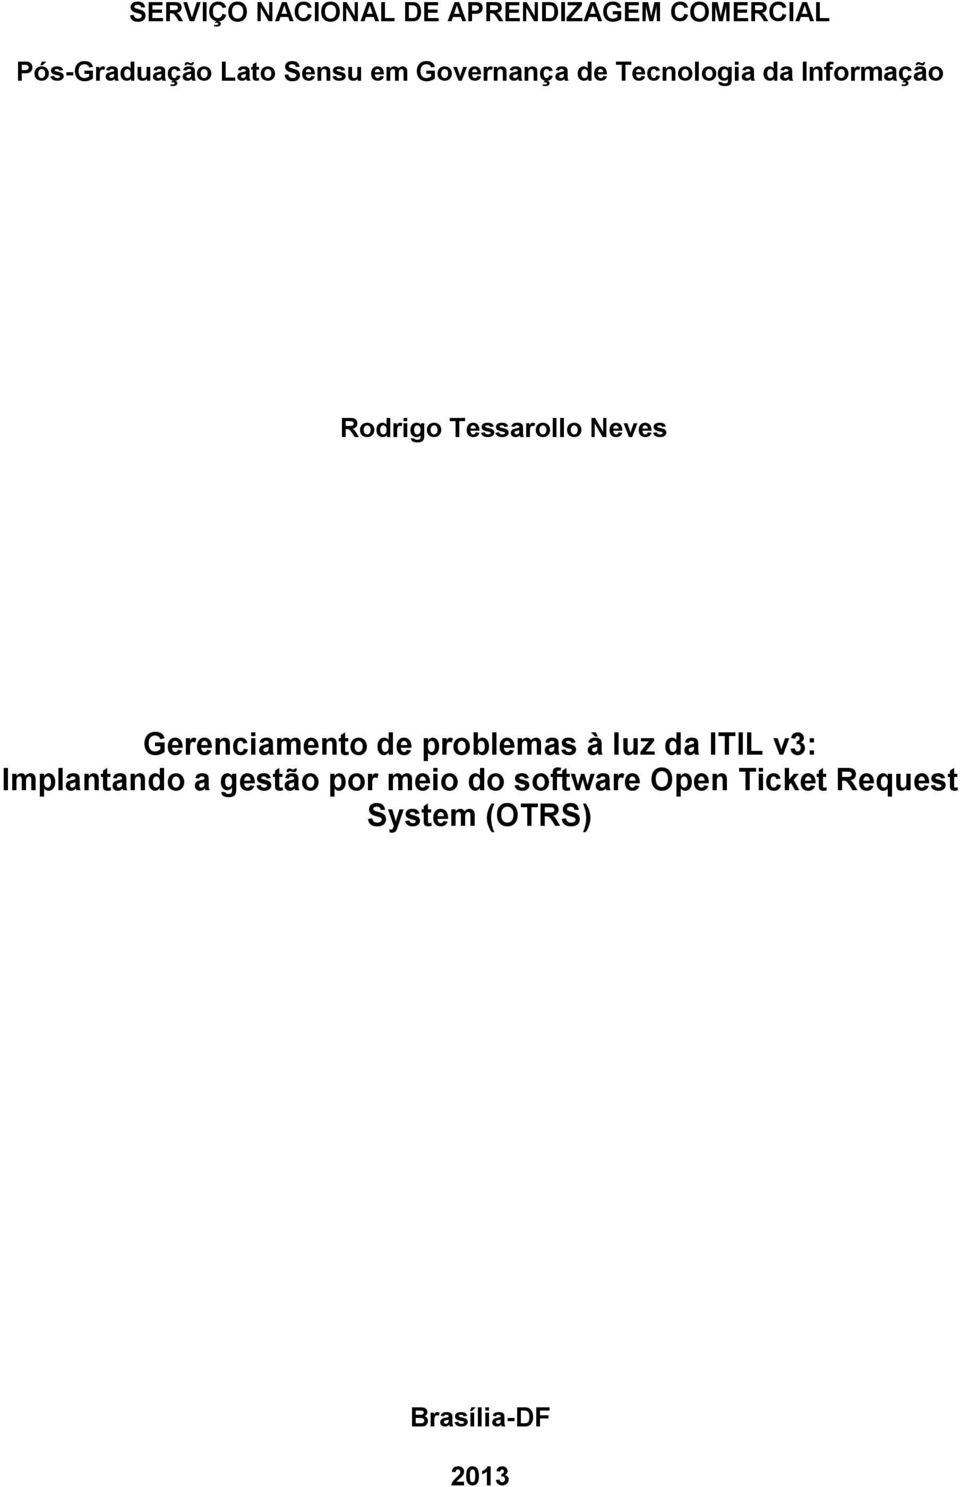 Gerenciamento de problemas à luz da ITIL v3: Implantando a gestão